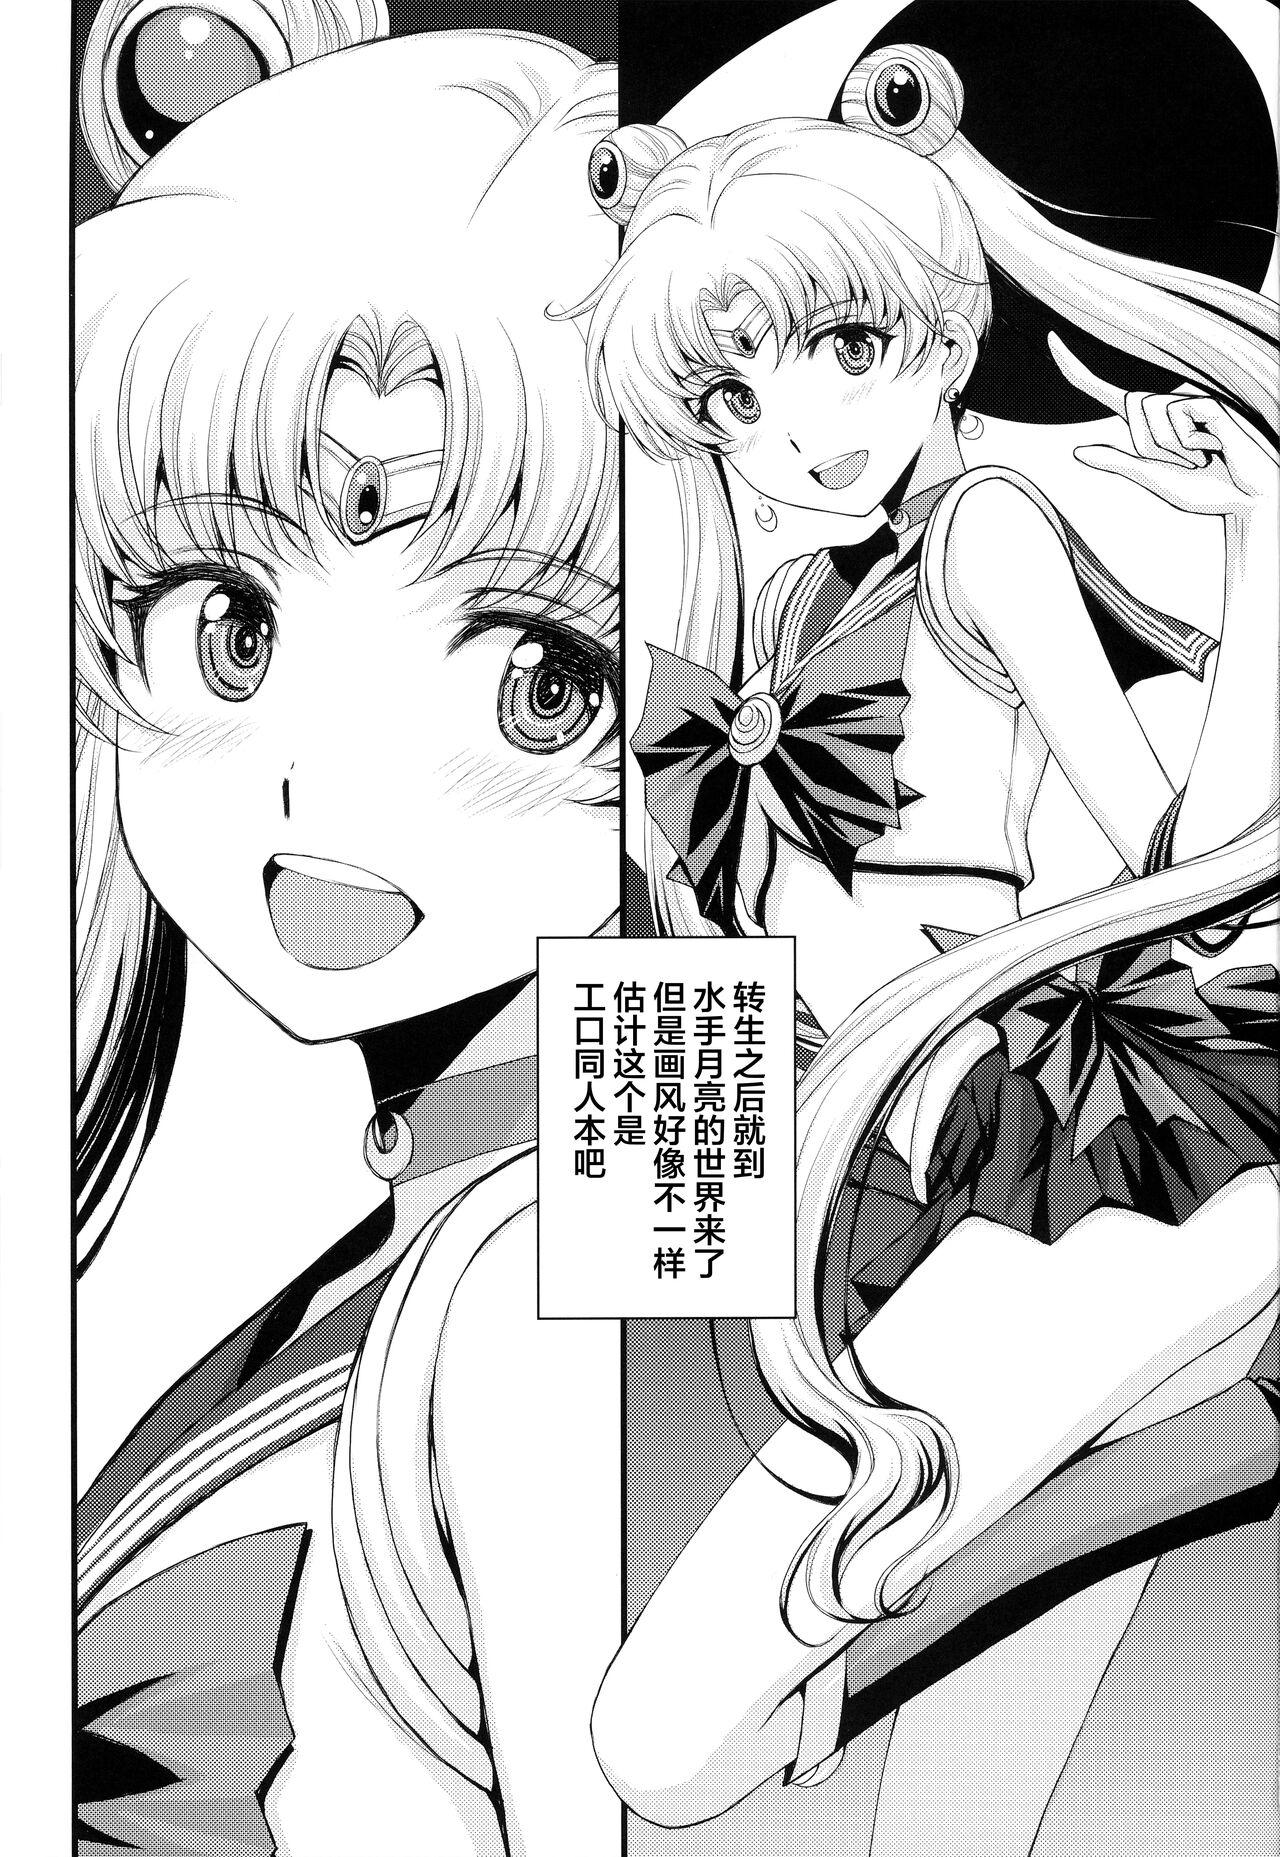 1080p Usagi no Junjou!? Chin Make Bishoujo Senshi! - Sailor moon | bishoujo senshi sailor moon Long Hair - Picture 2